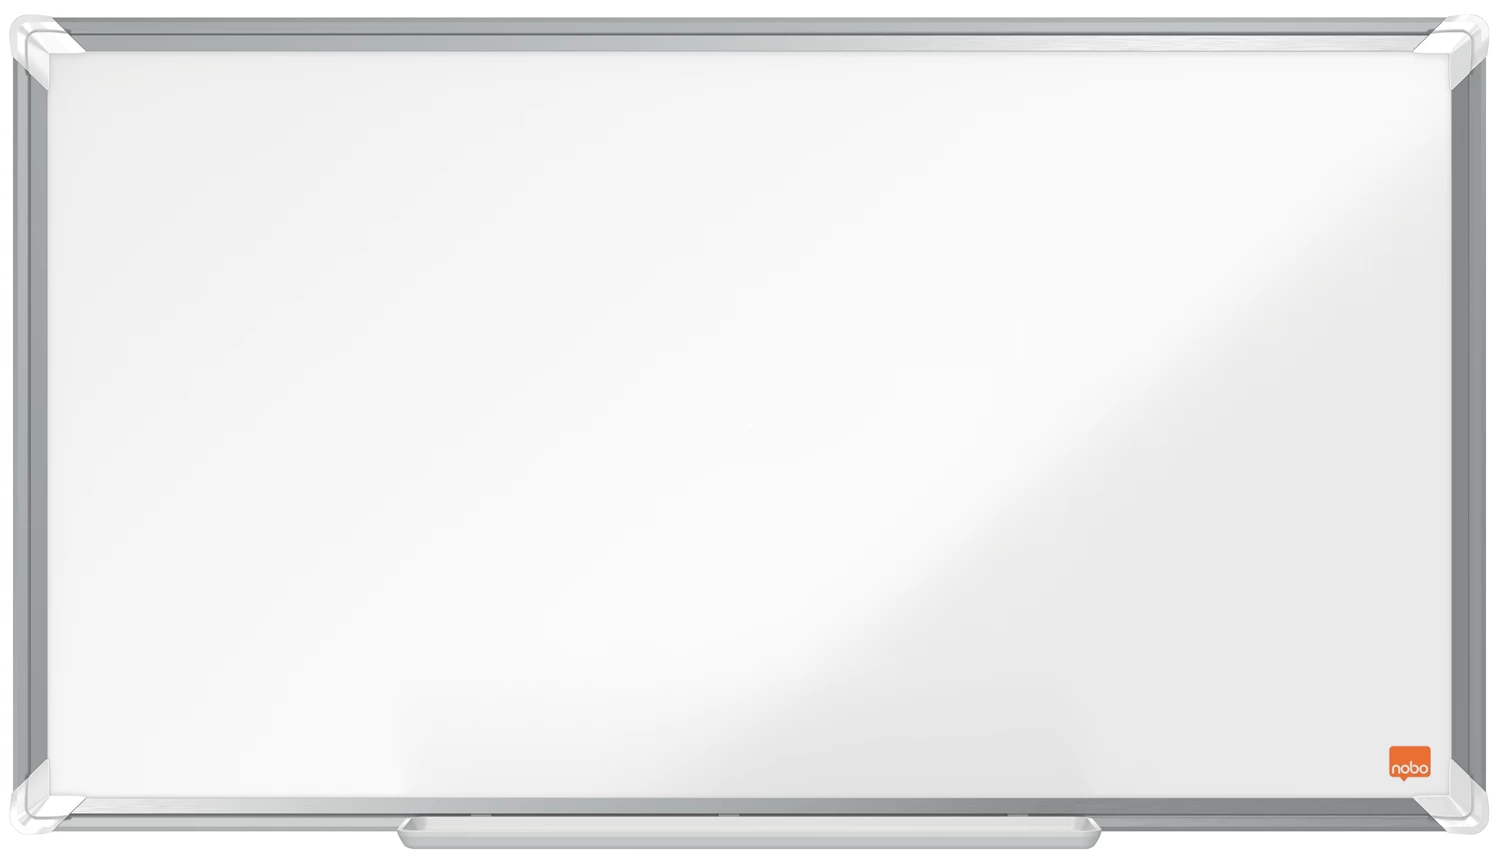 Whiteboardtavla Nobo Premium Emalj 710x400 mm